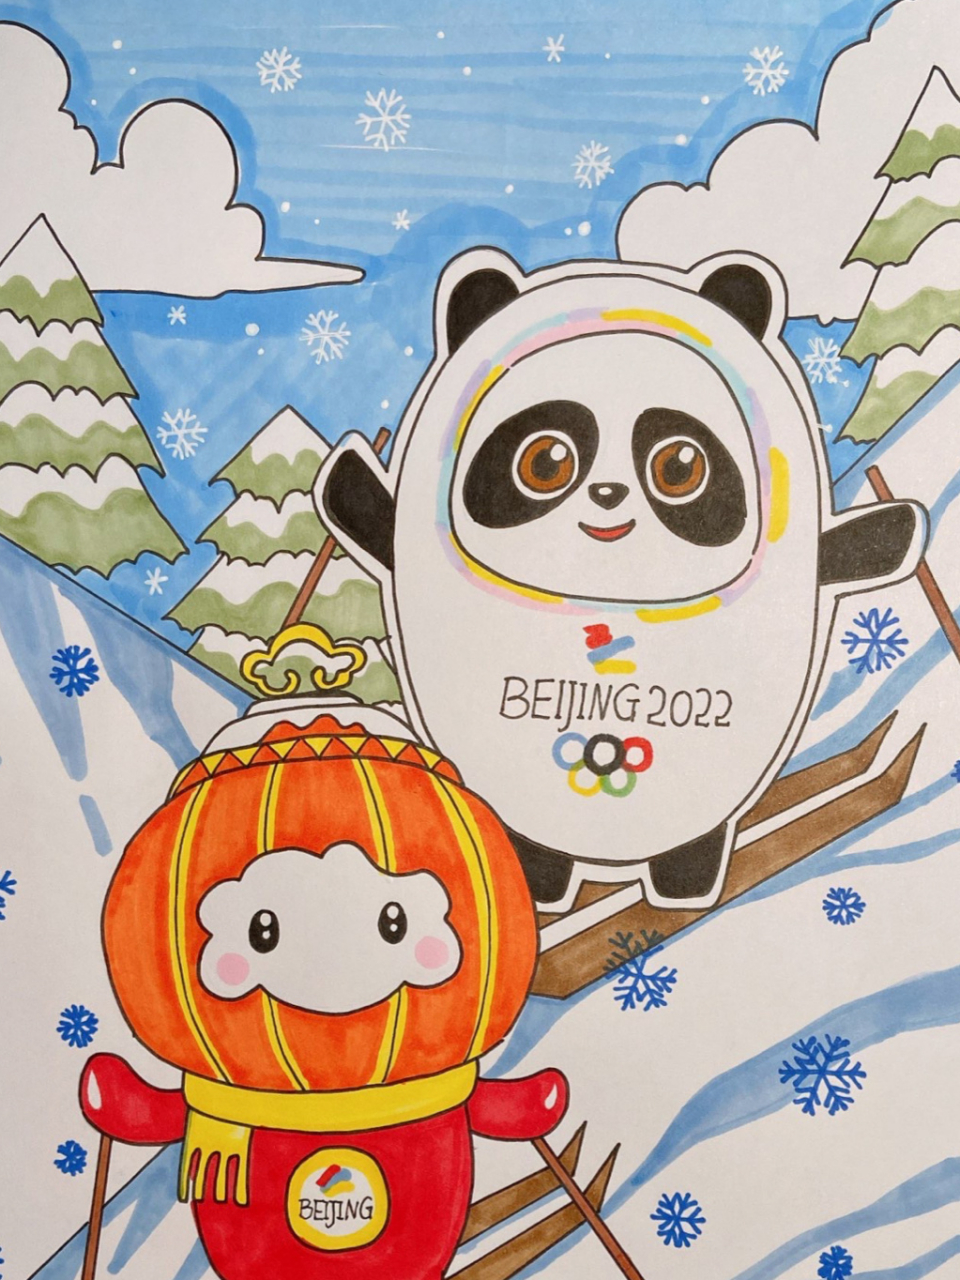 冬奥会吉祥物马克笔手绘 墩墩,意喻健康,活泼,可爱,契合熊猫的整体